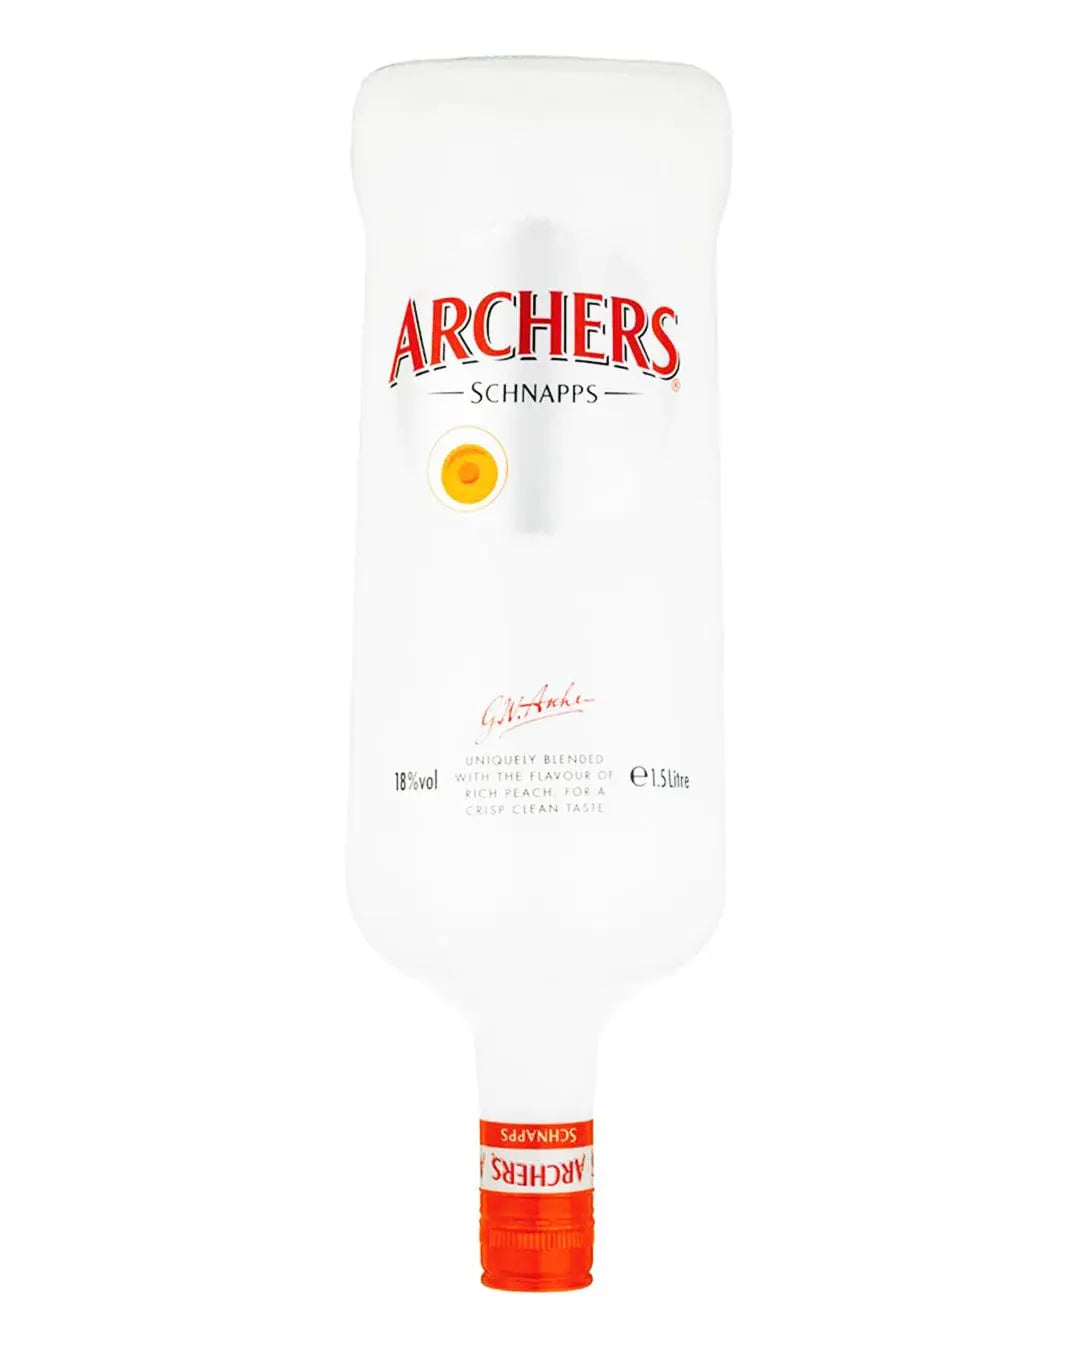 Archers Peach Schnapps, 1.5 L Liqueurs & Other Spirits 5010103926393